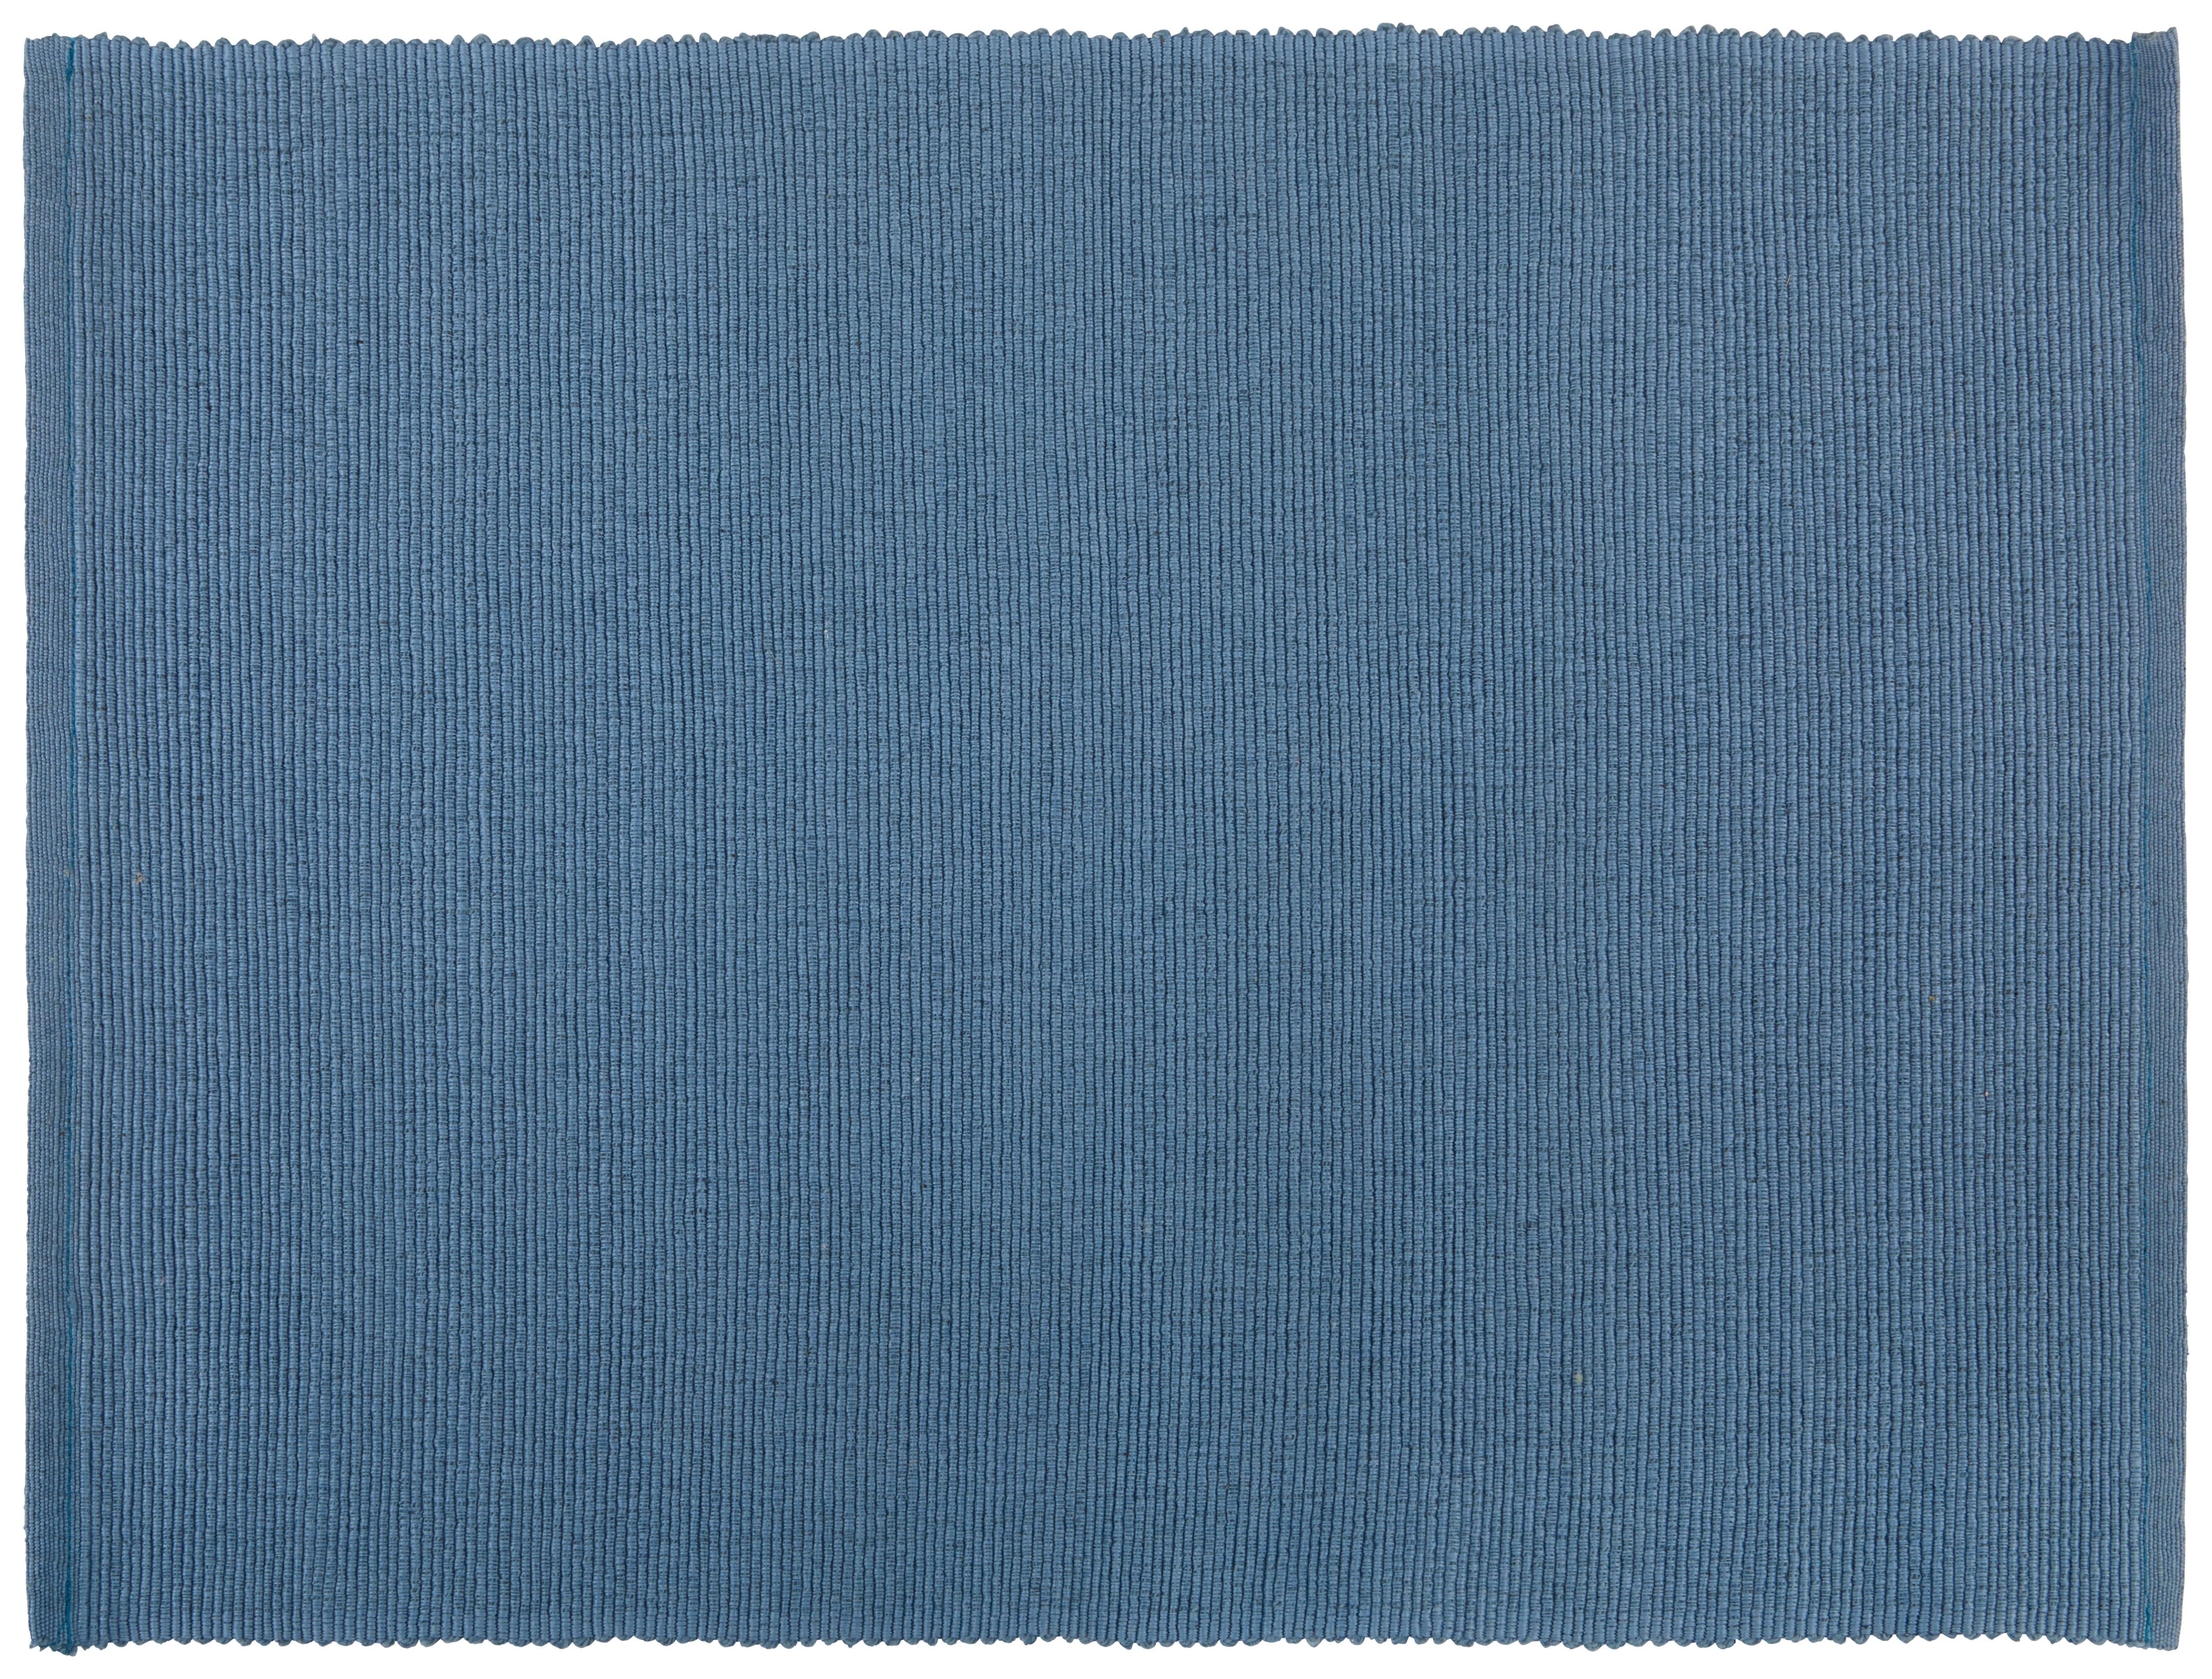 Podmetač Za Stol 33/45cm Maren - plava, tekstil (33/45cm) - Modern Living